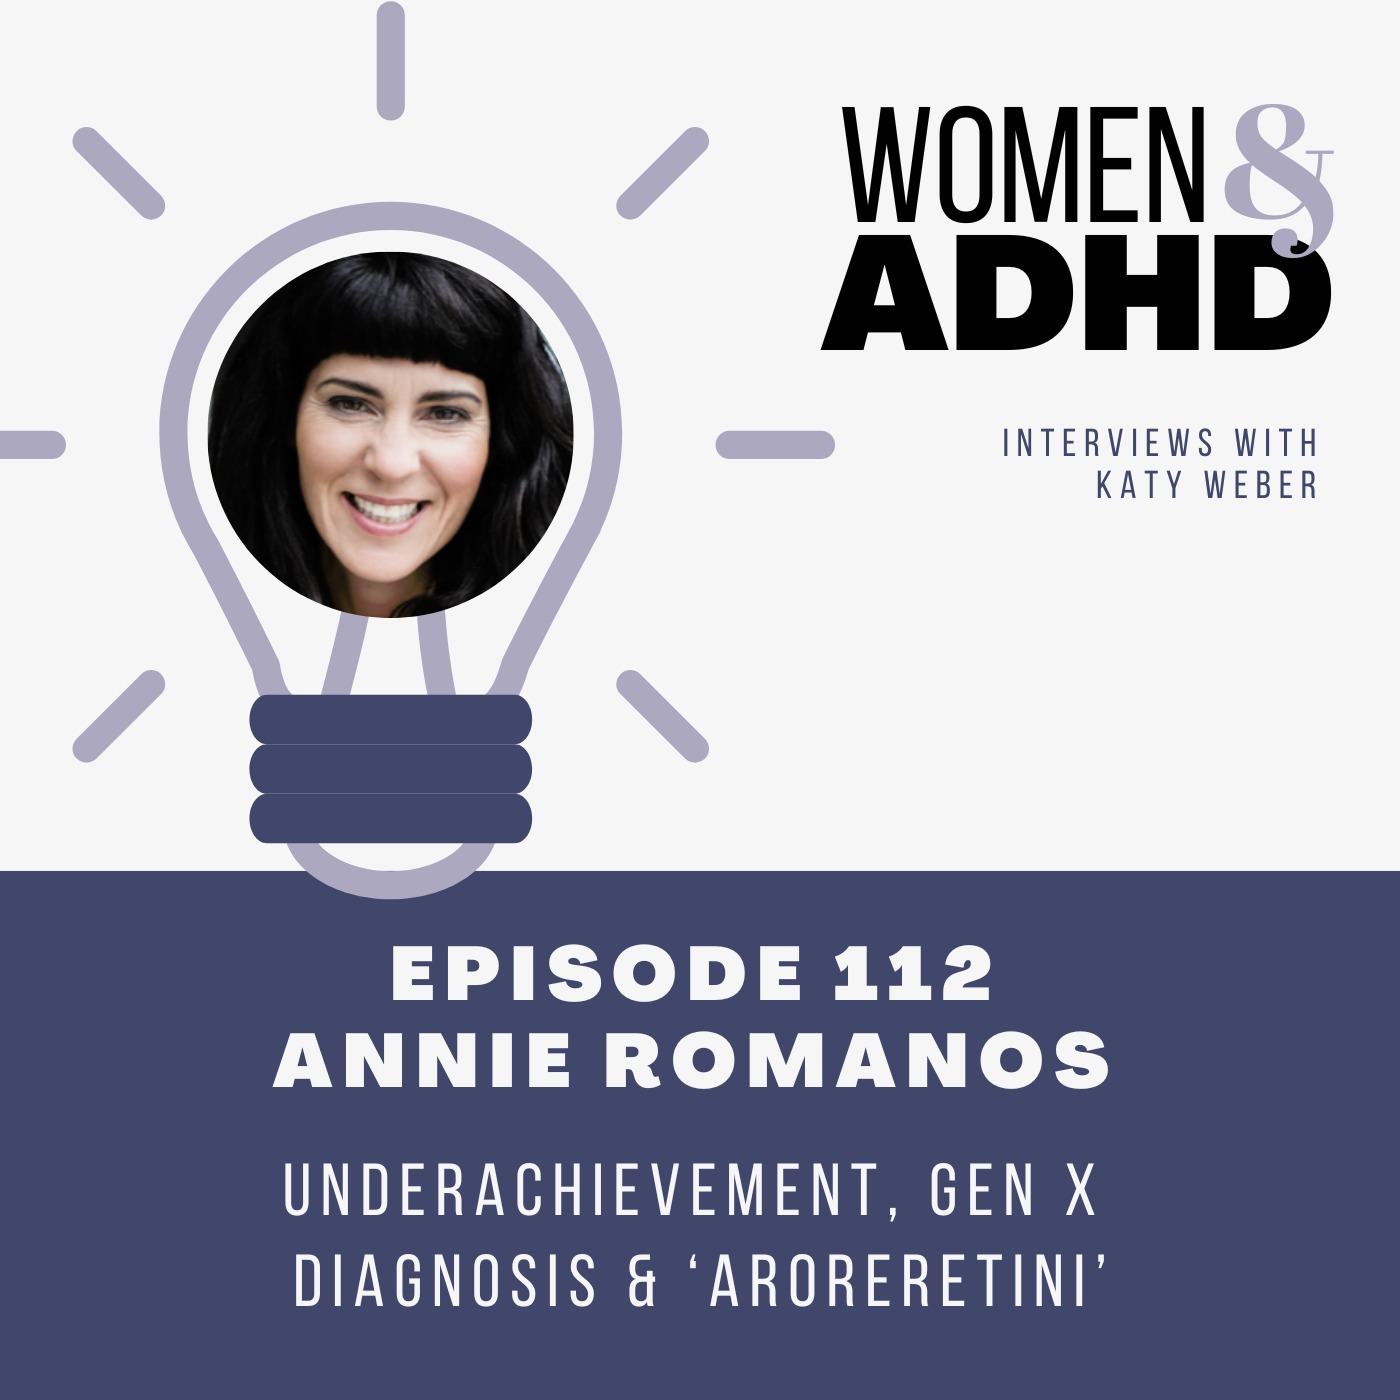 Annie Romanos: Underachievement, Gen X diagnosis & ‘Aroreretini’